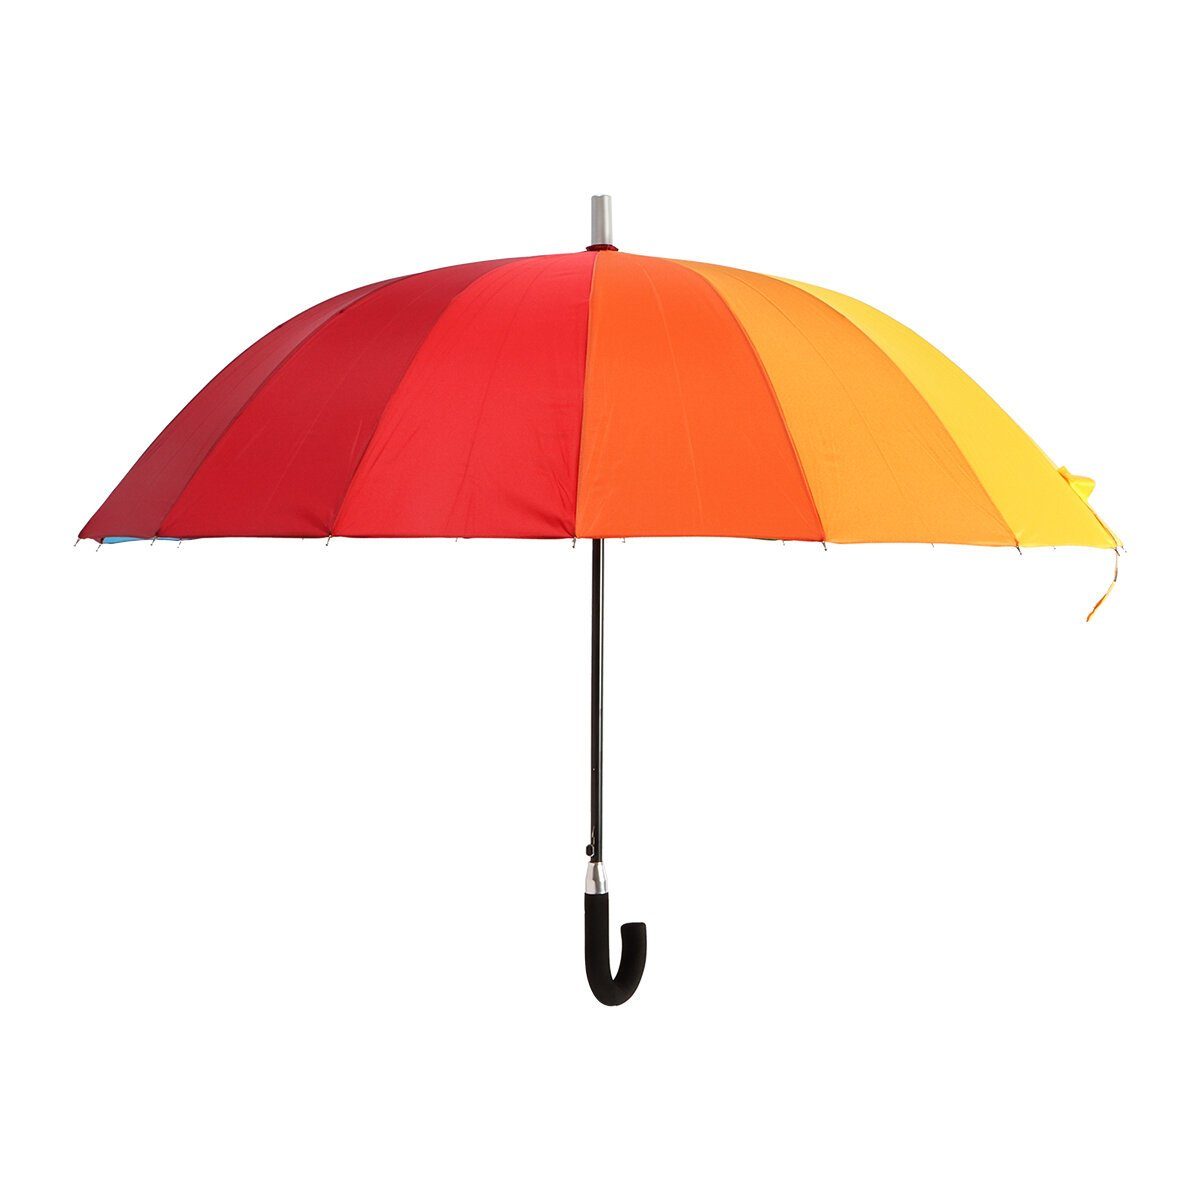 BIGGDESIGN Moods Up Langregenschirm Regenschirm Biggdesign